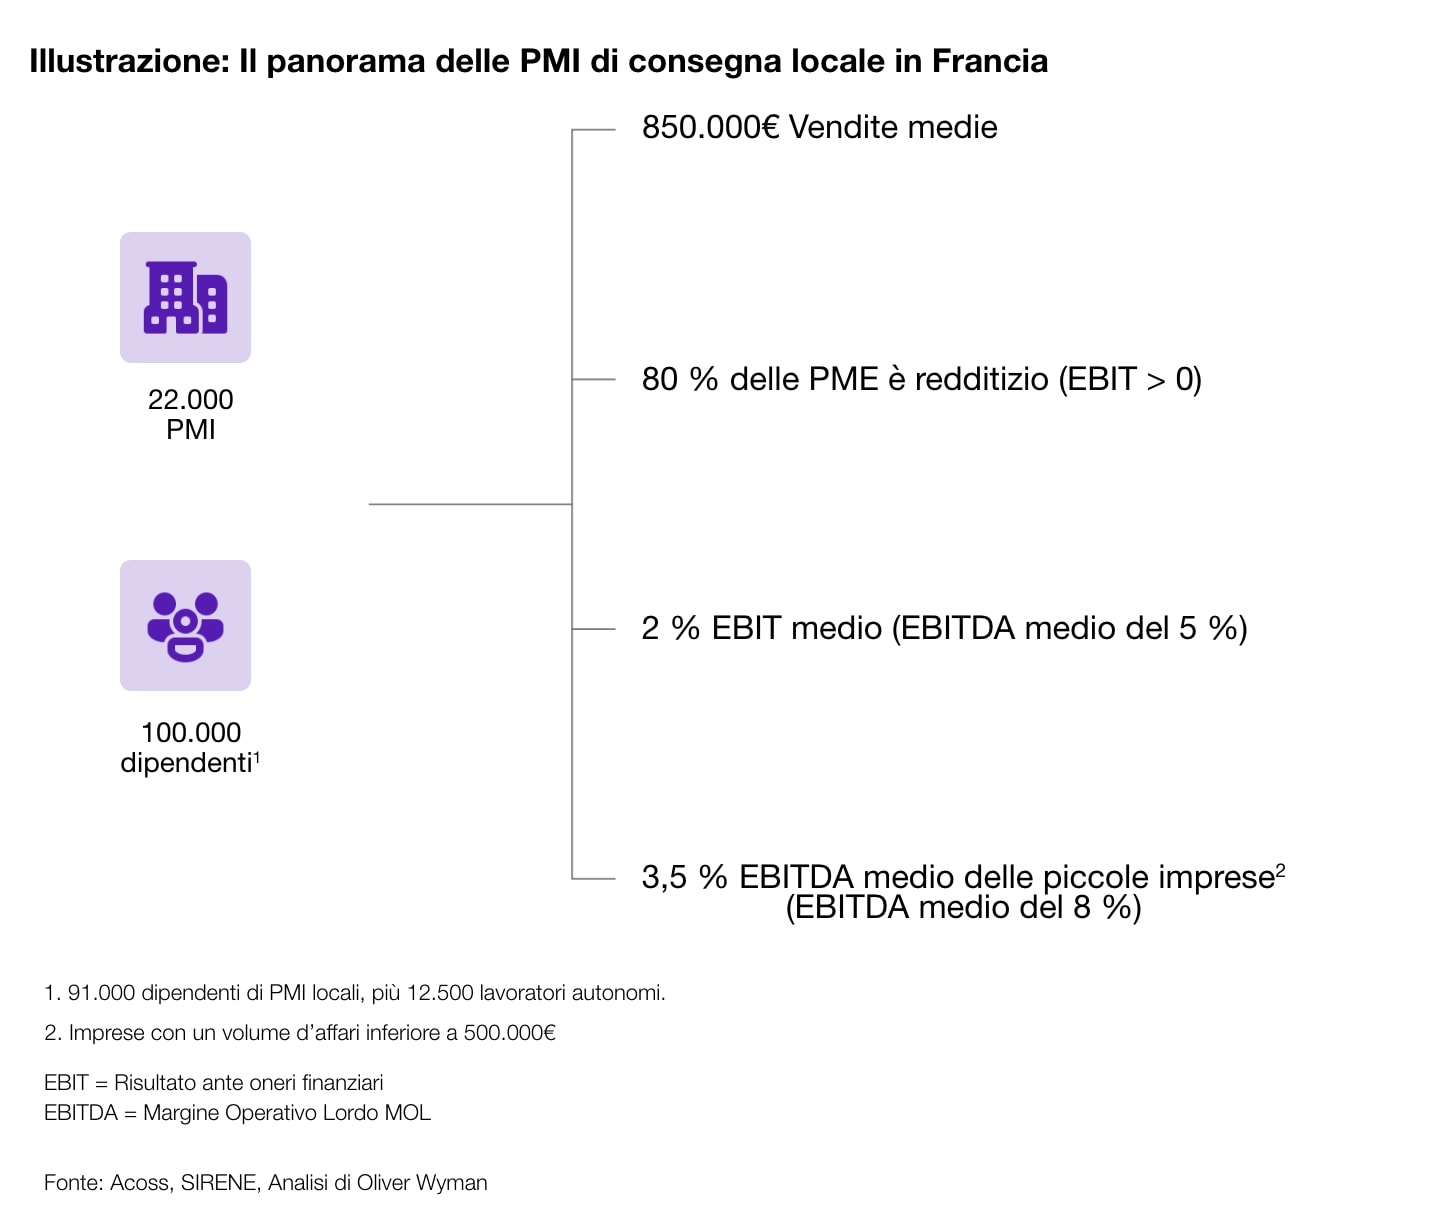 Il panorama delle PMI di consegna locale in Francia.